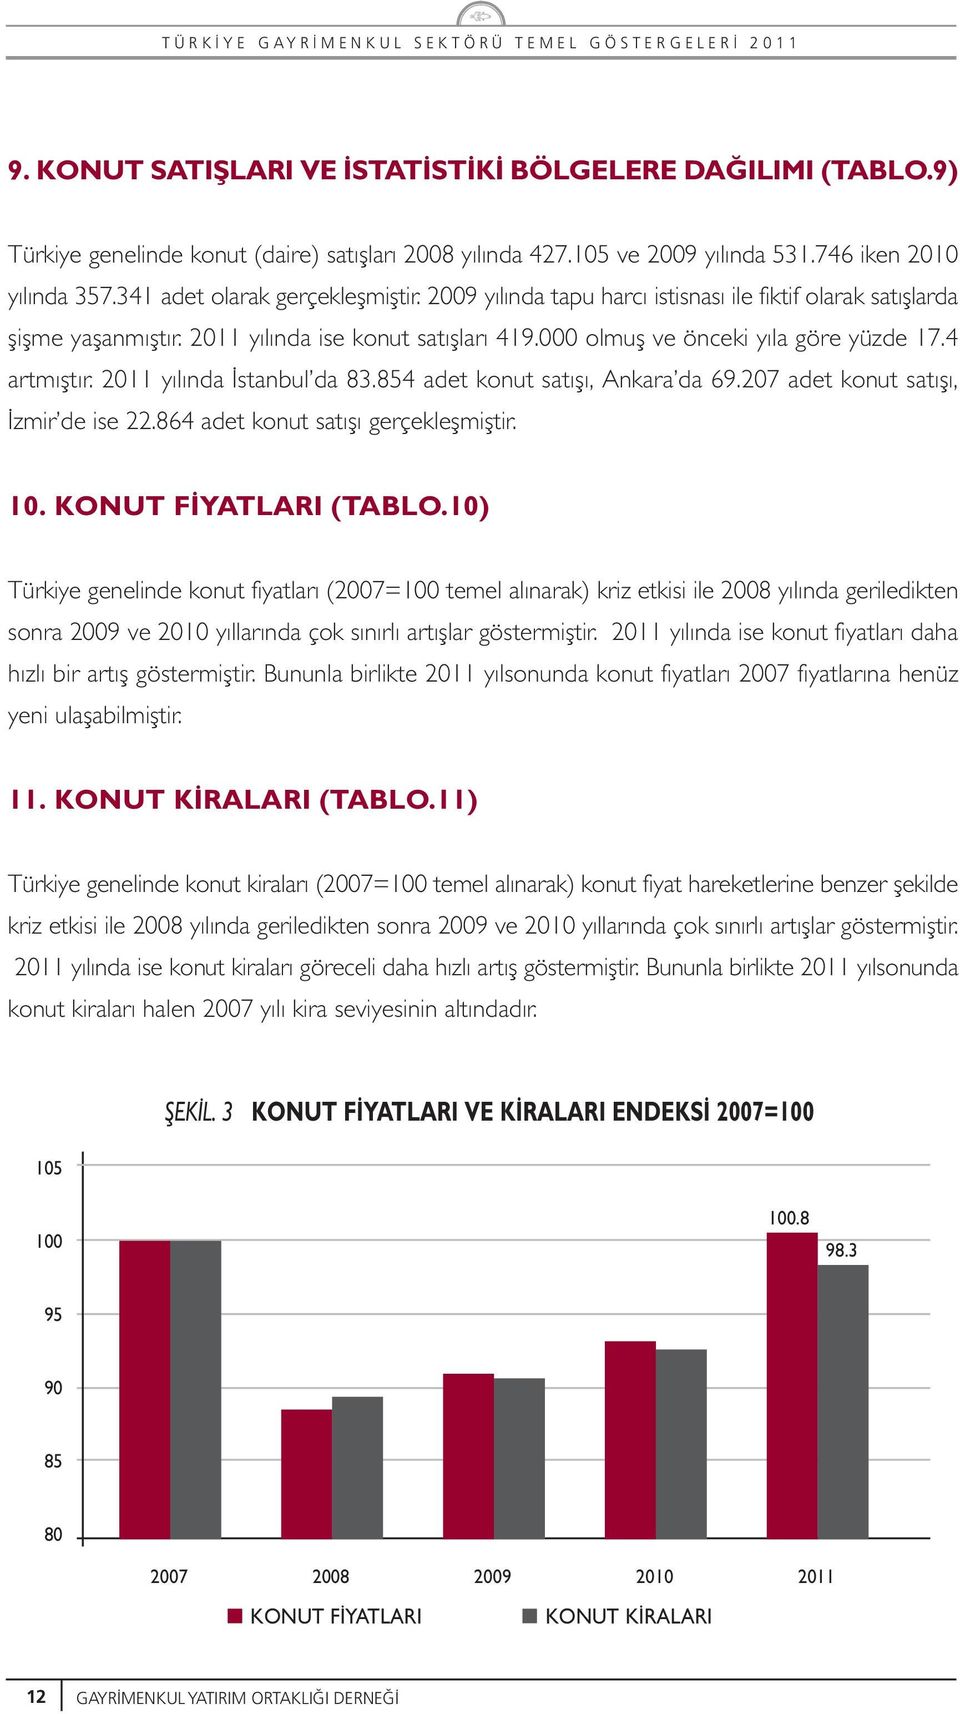 4 artmıfltır. 2011 yılında stanbul da 83.854 adet konut satıflı, Ankara da 69.207 adet konut satıflı, zmir de ise 22.864 adet konut satıflı gerçekleflmifltir. 10. KONUT F YATLARI (TABLO.